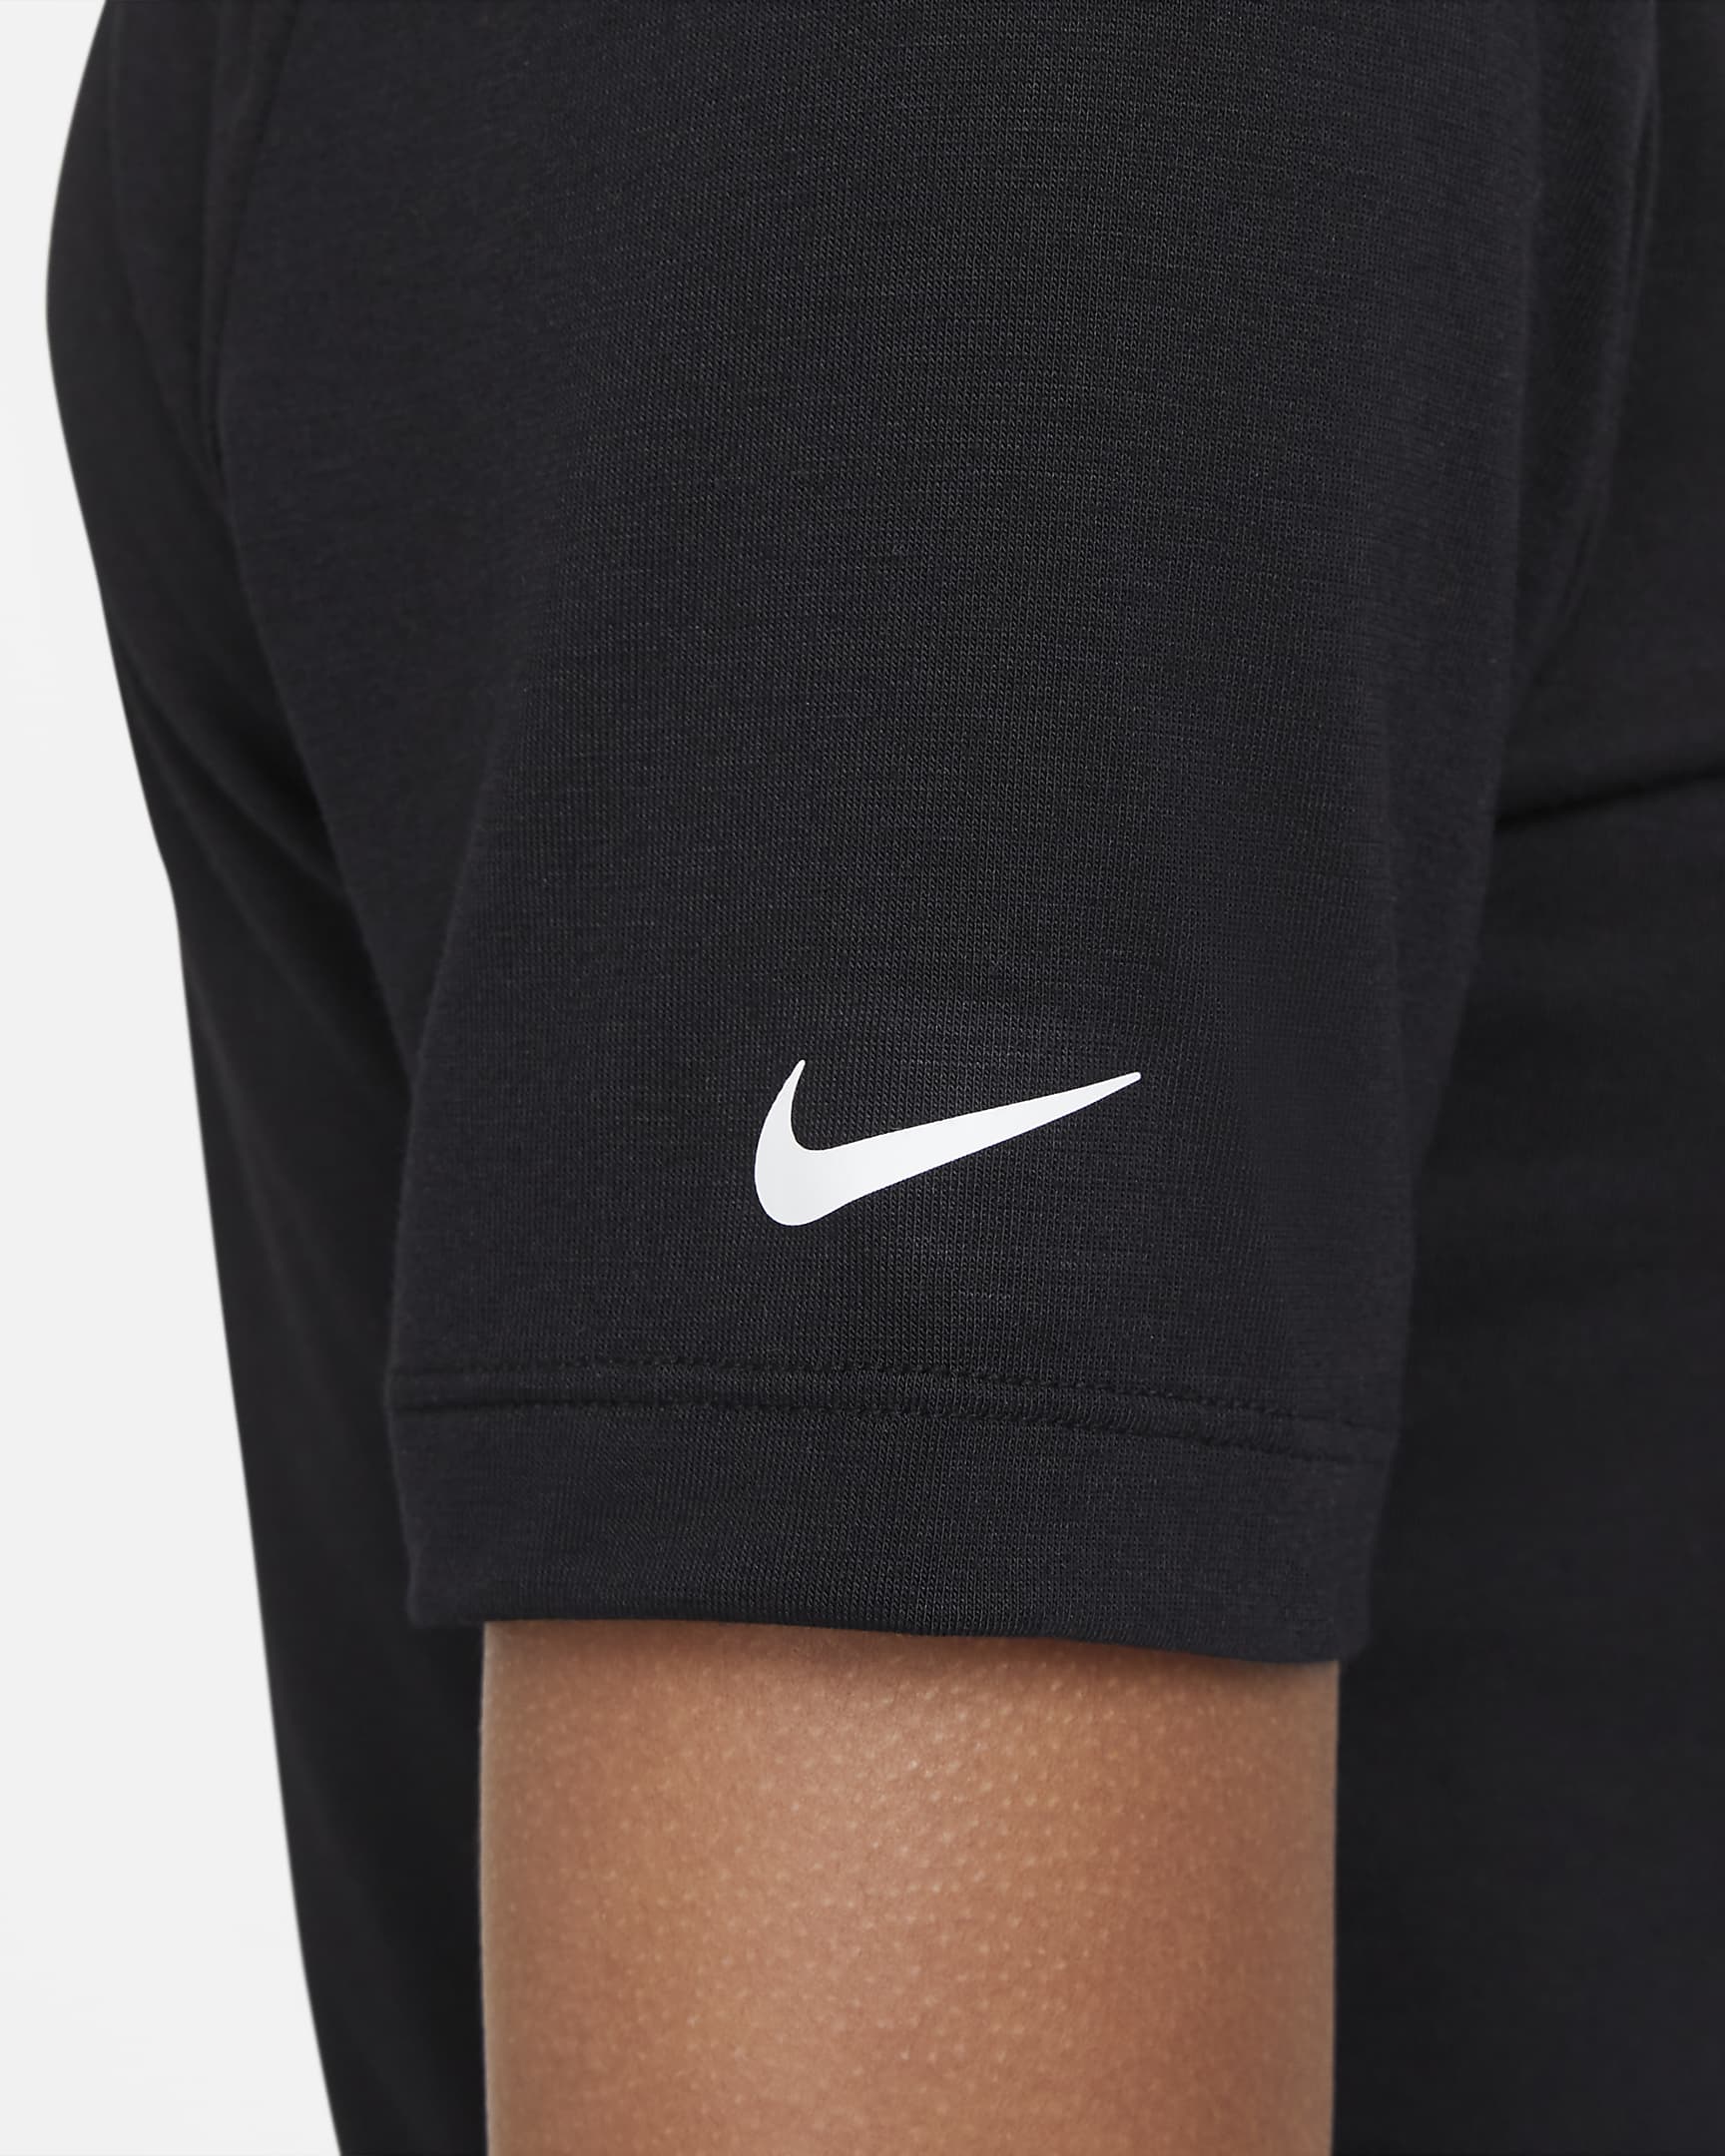 Naomi Osaka Cropped Tennis T-Shirt. Nike HR